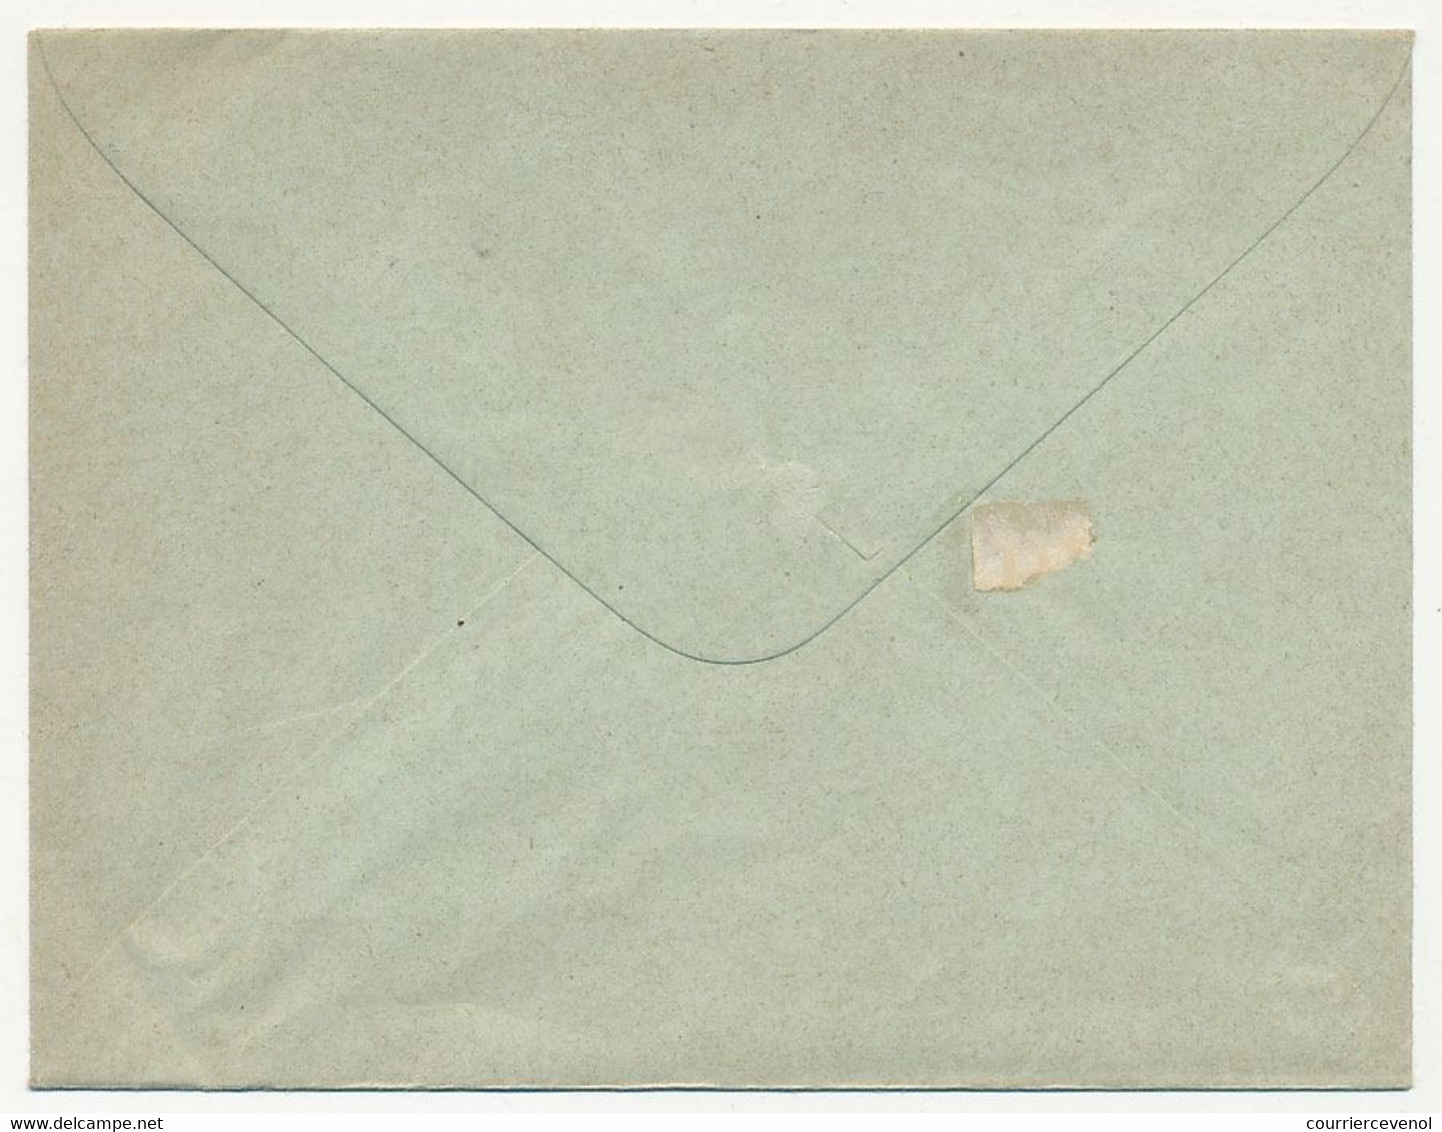 CONGO FRANÇAIS - Entier Postal (enveloppe) 15 C Groupe Allégorique - EN 4 - 147 X 112 Mm - Lettres & Documents